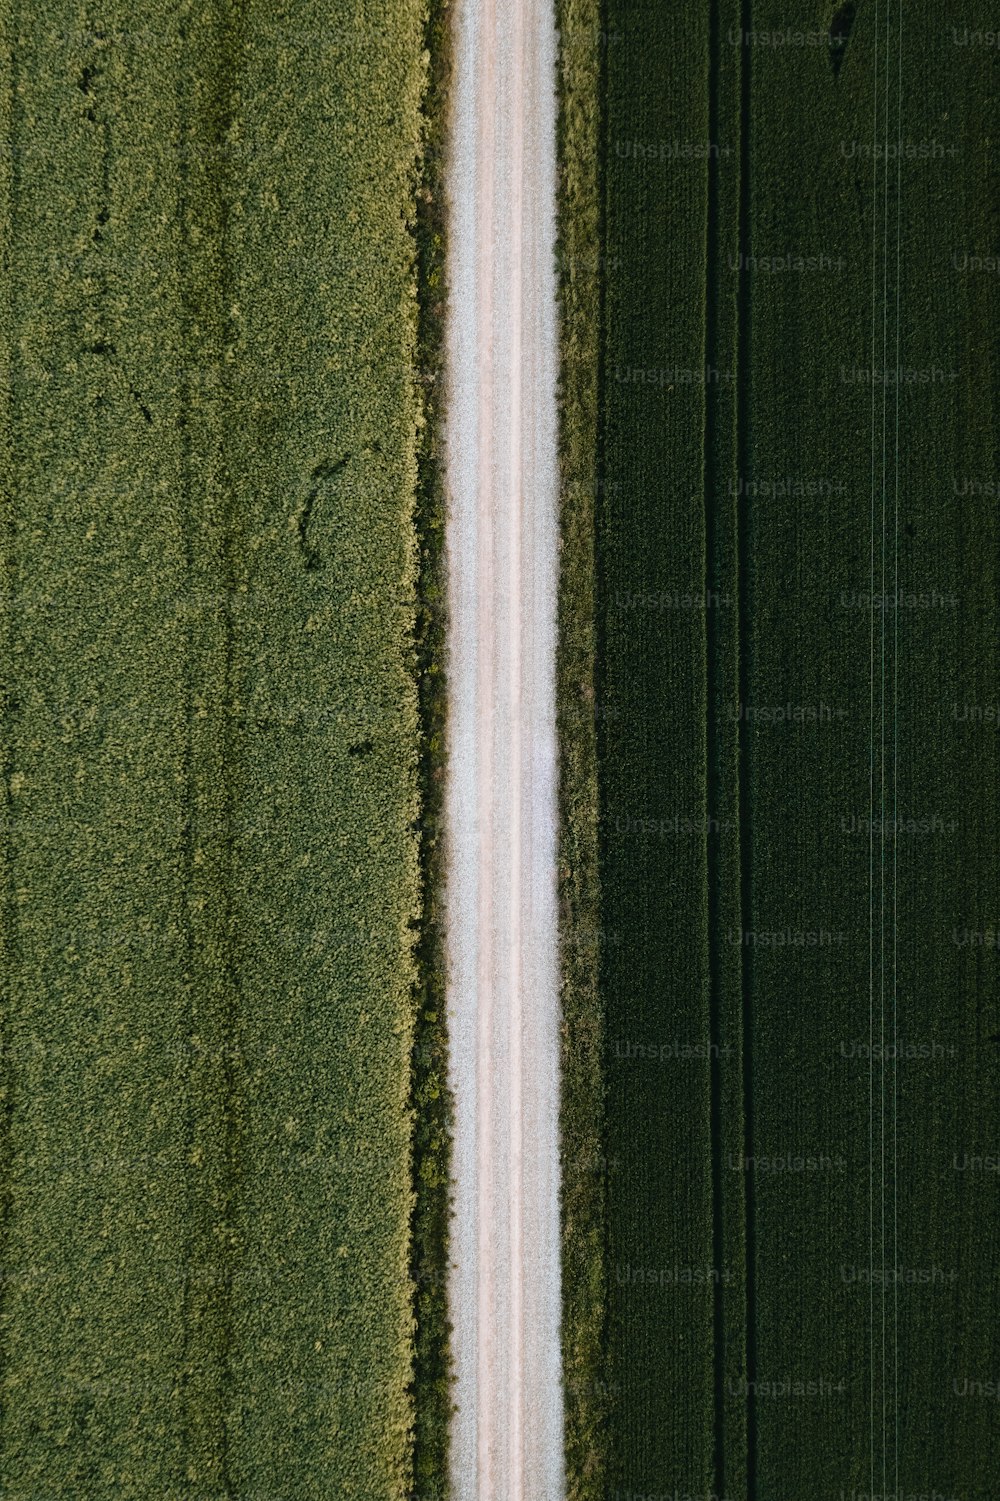 una veduta aerea di una strada tra due campi verdi